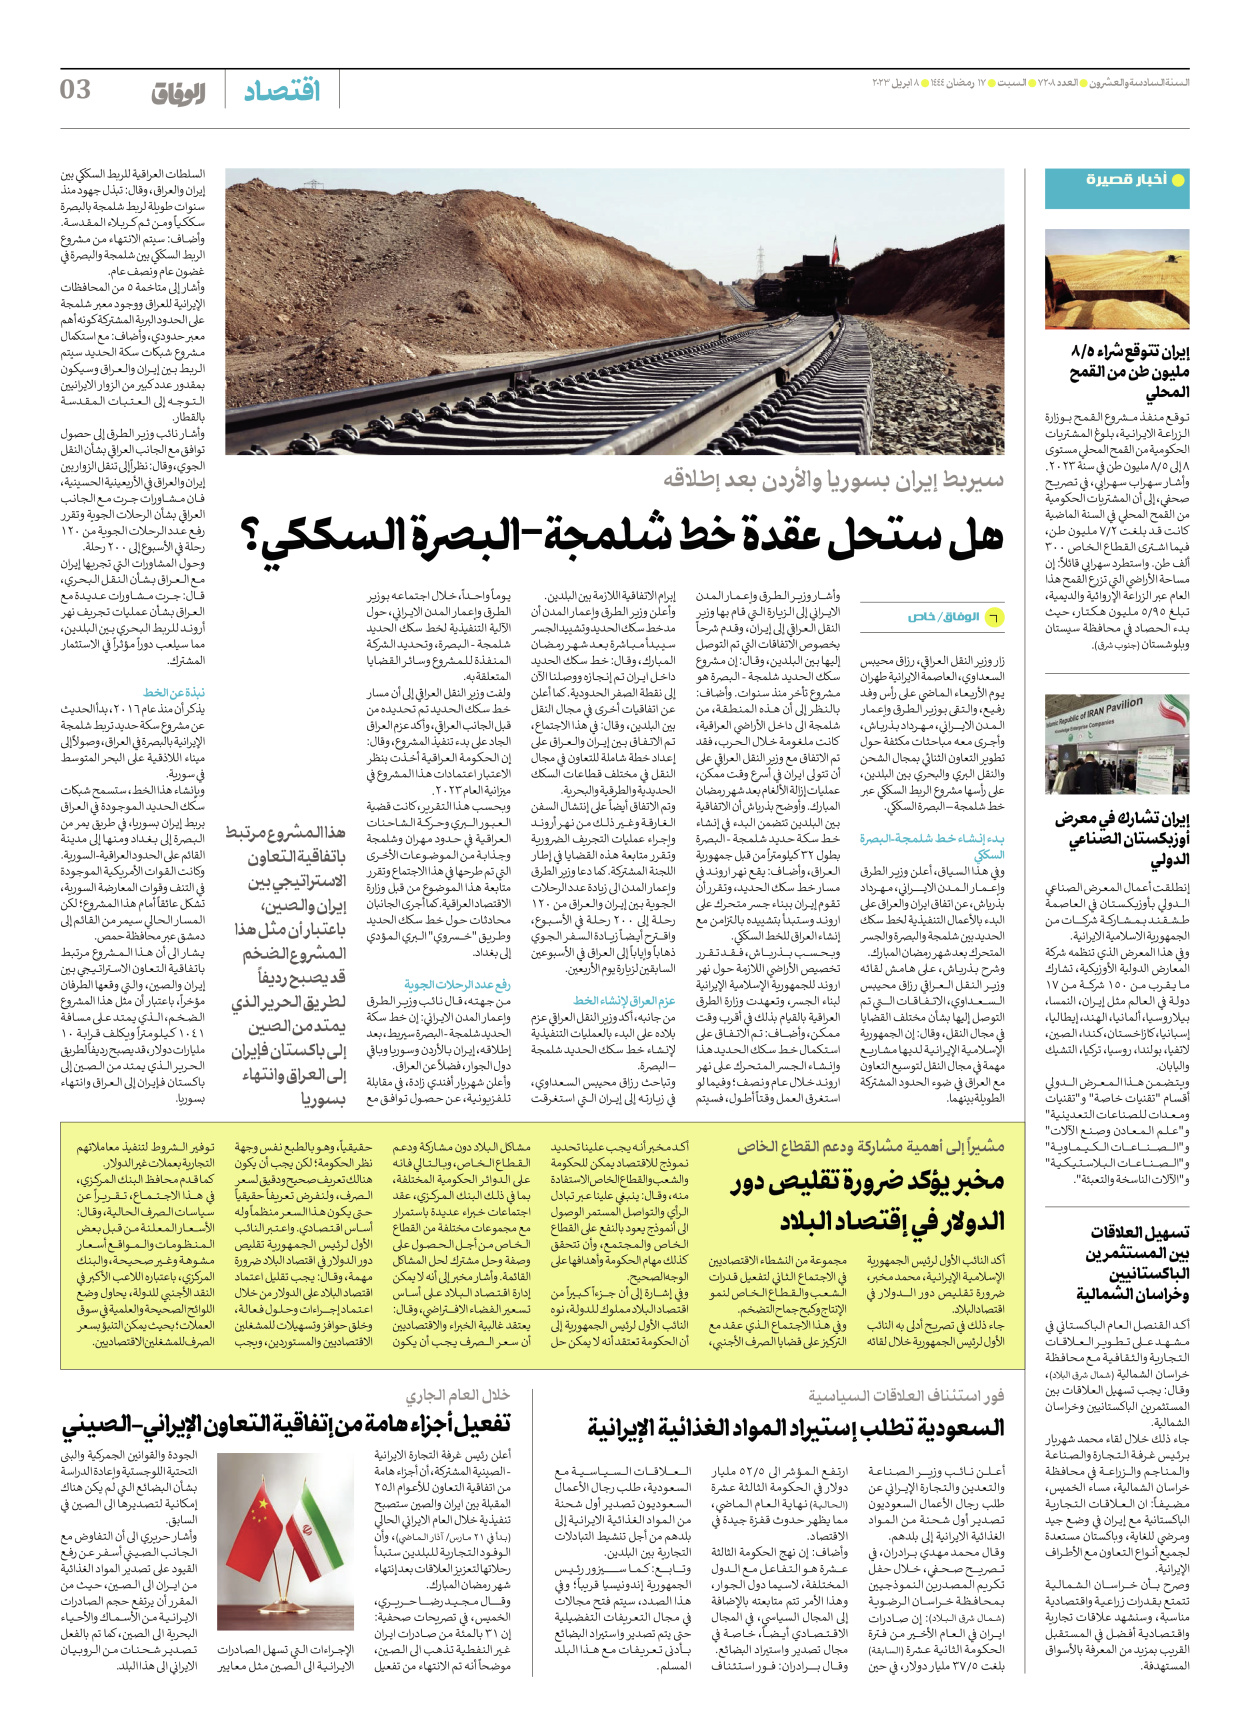 صحیفة ایران الدولیة الوفاق - العدد سبعة آلاف ومائتان وثمانية - ٠٨ أبريل ٢٠٢٣ - الصفحة ۳